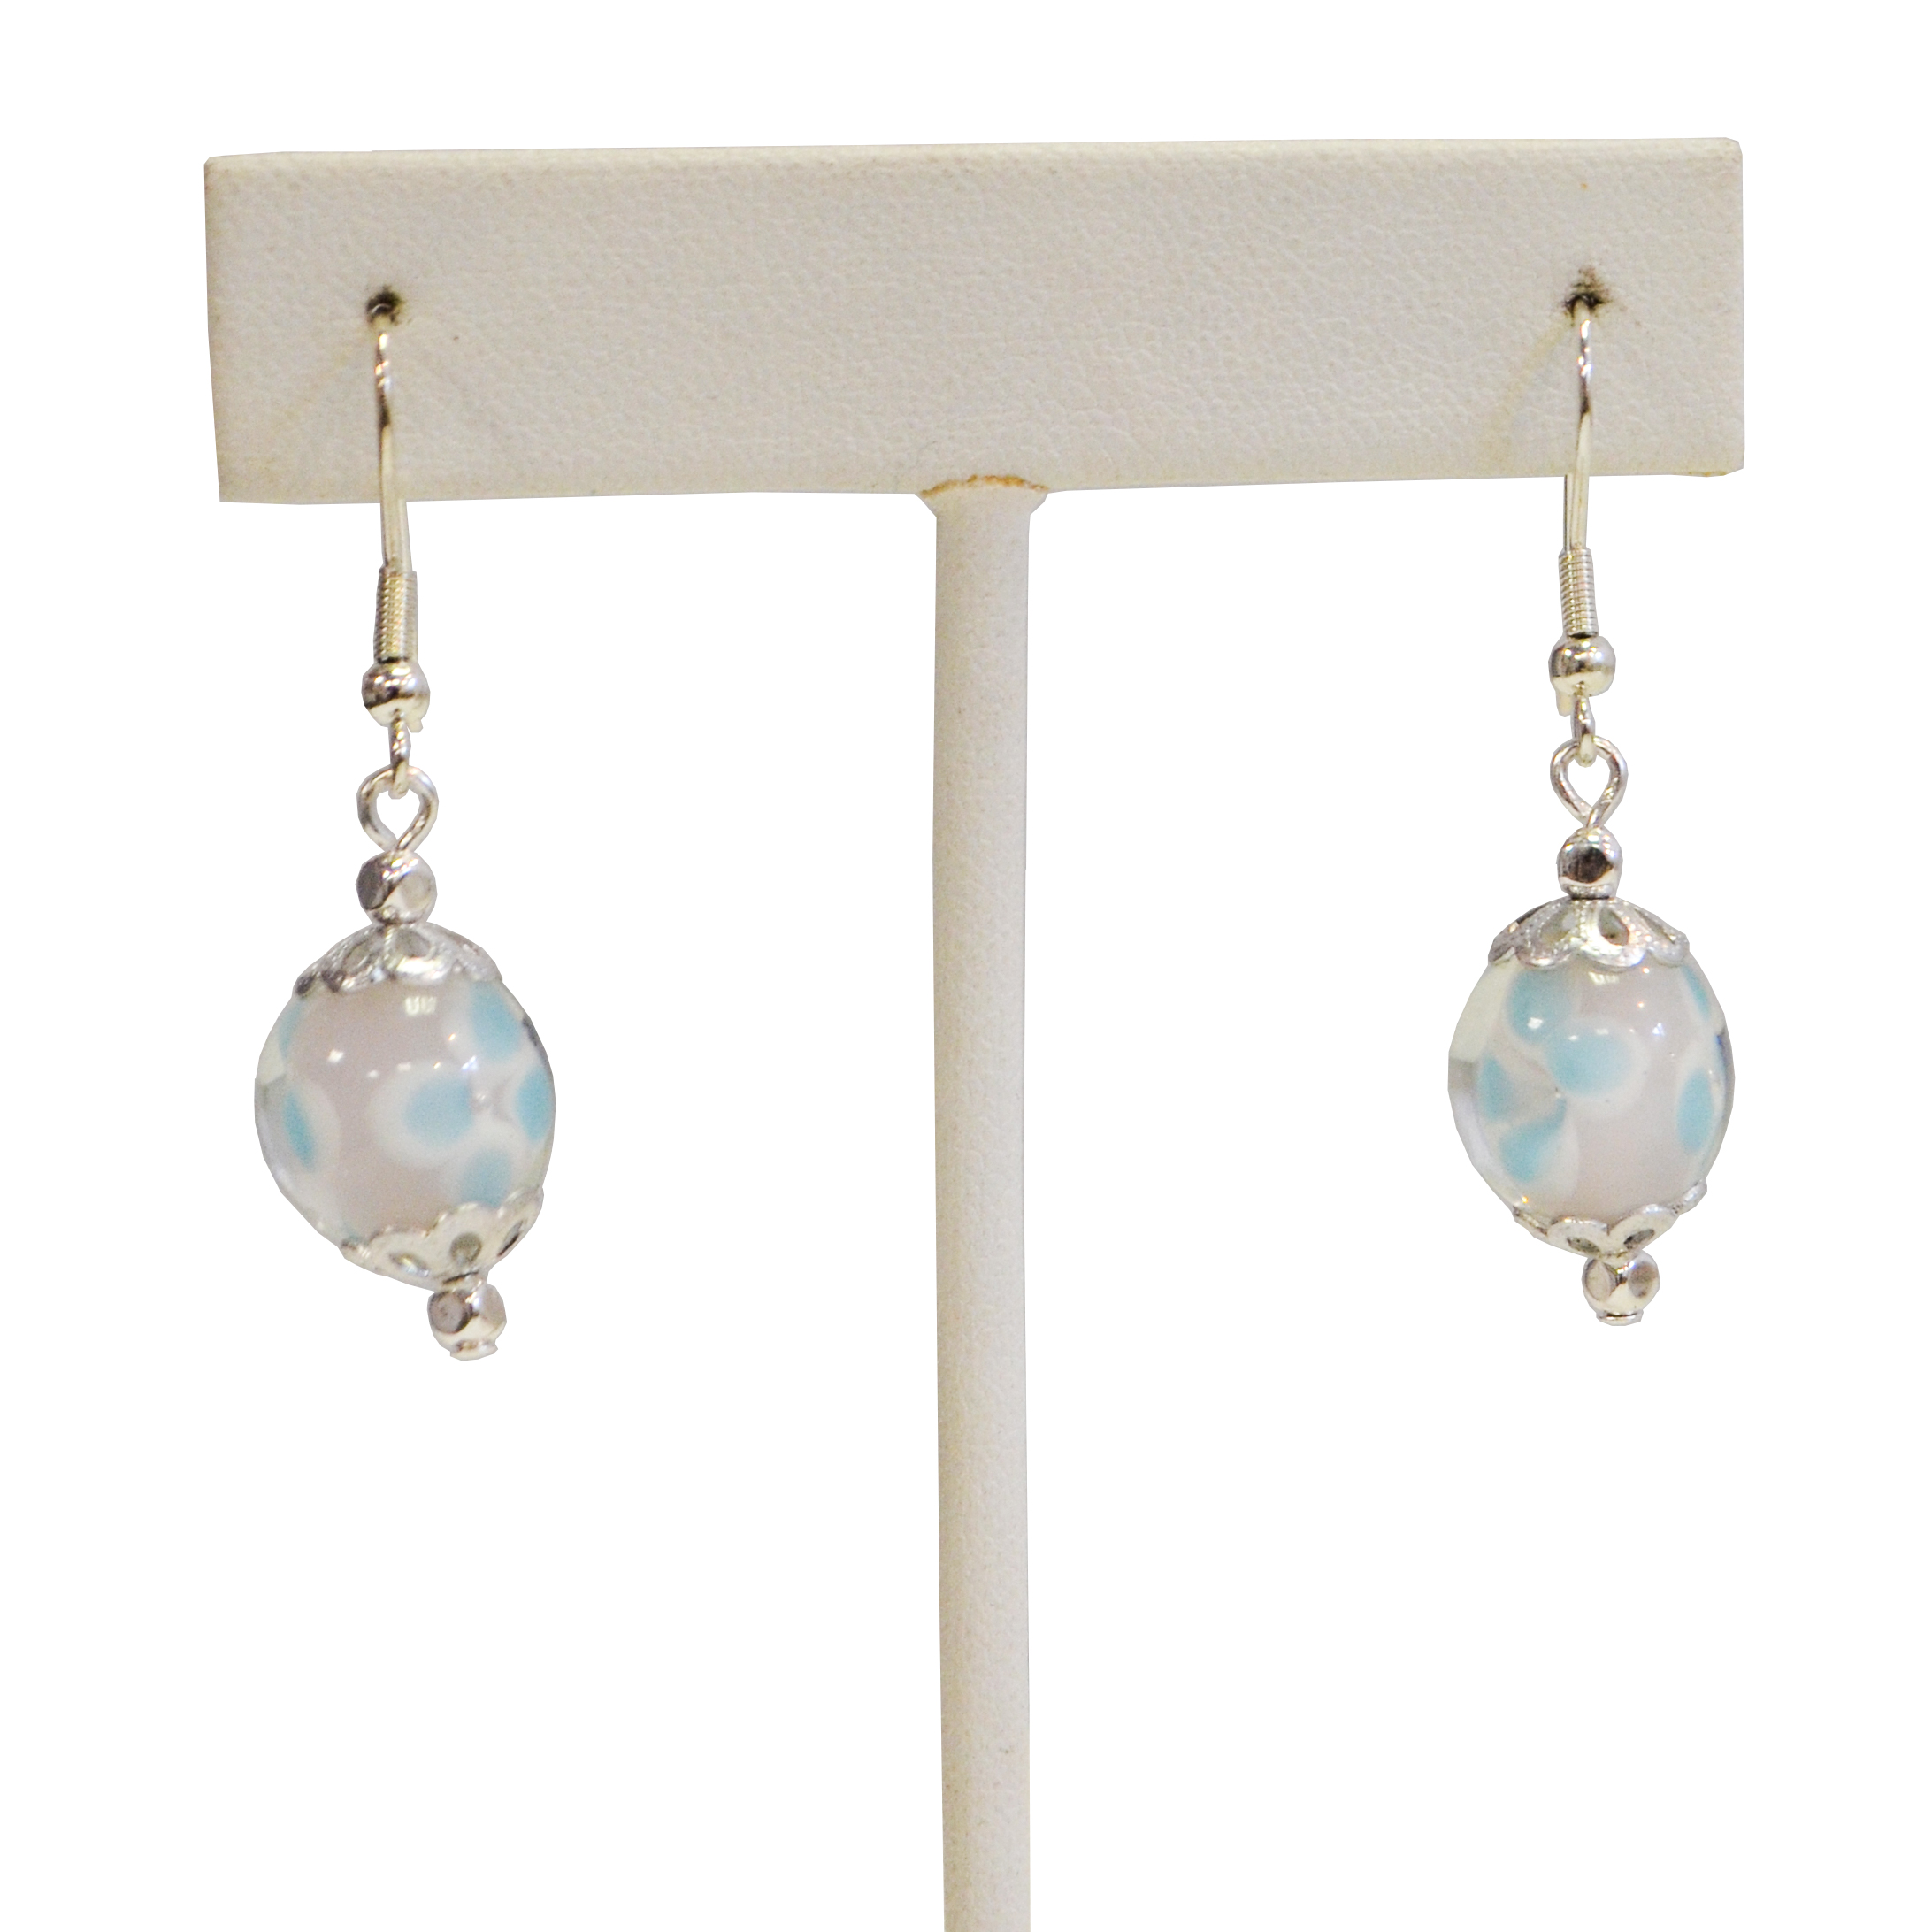 Flower earrings by Judy Phillips